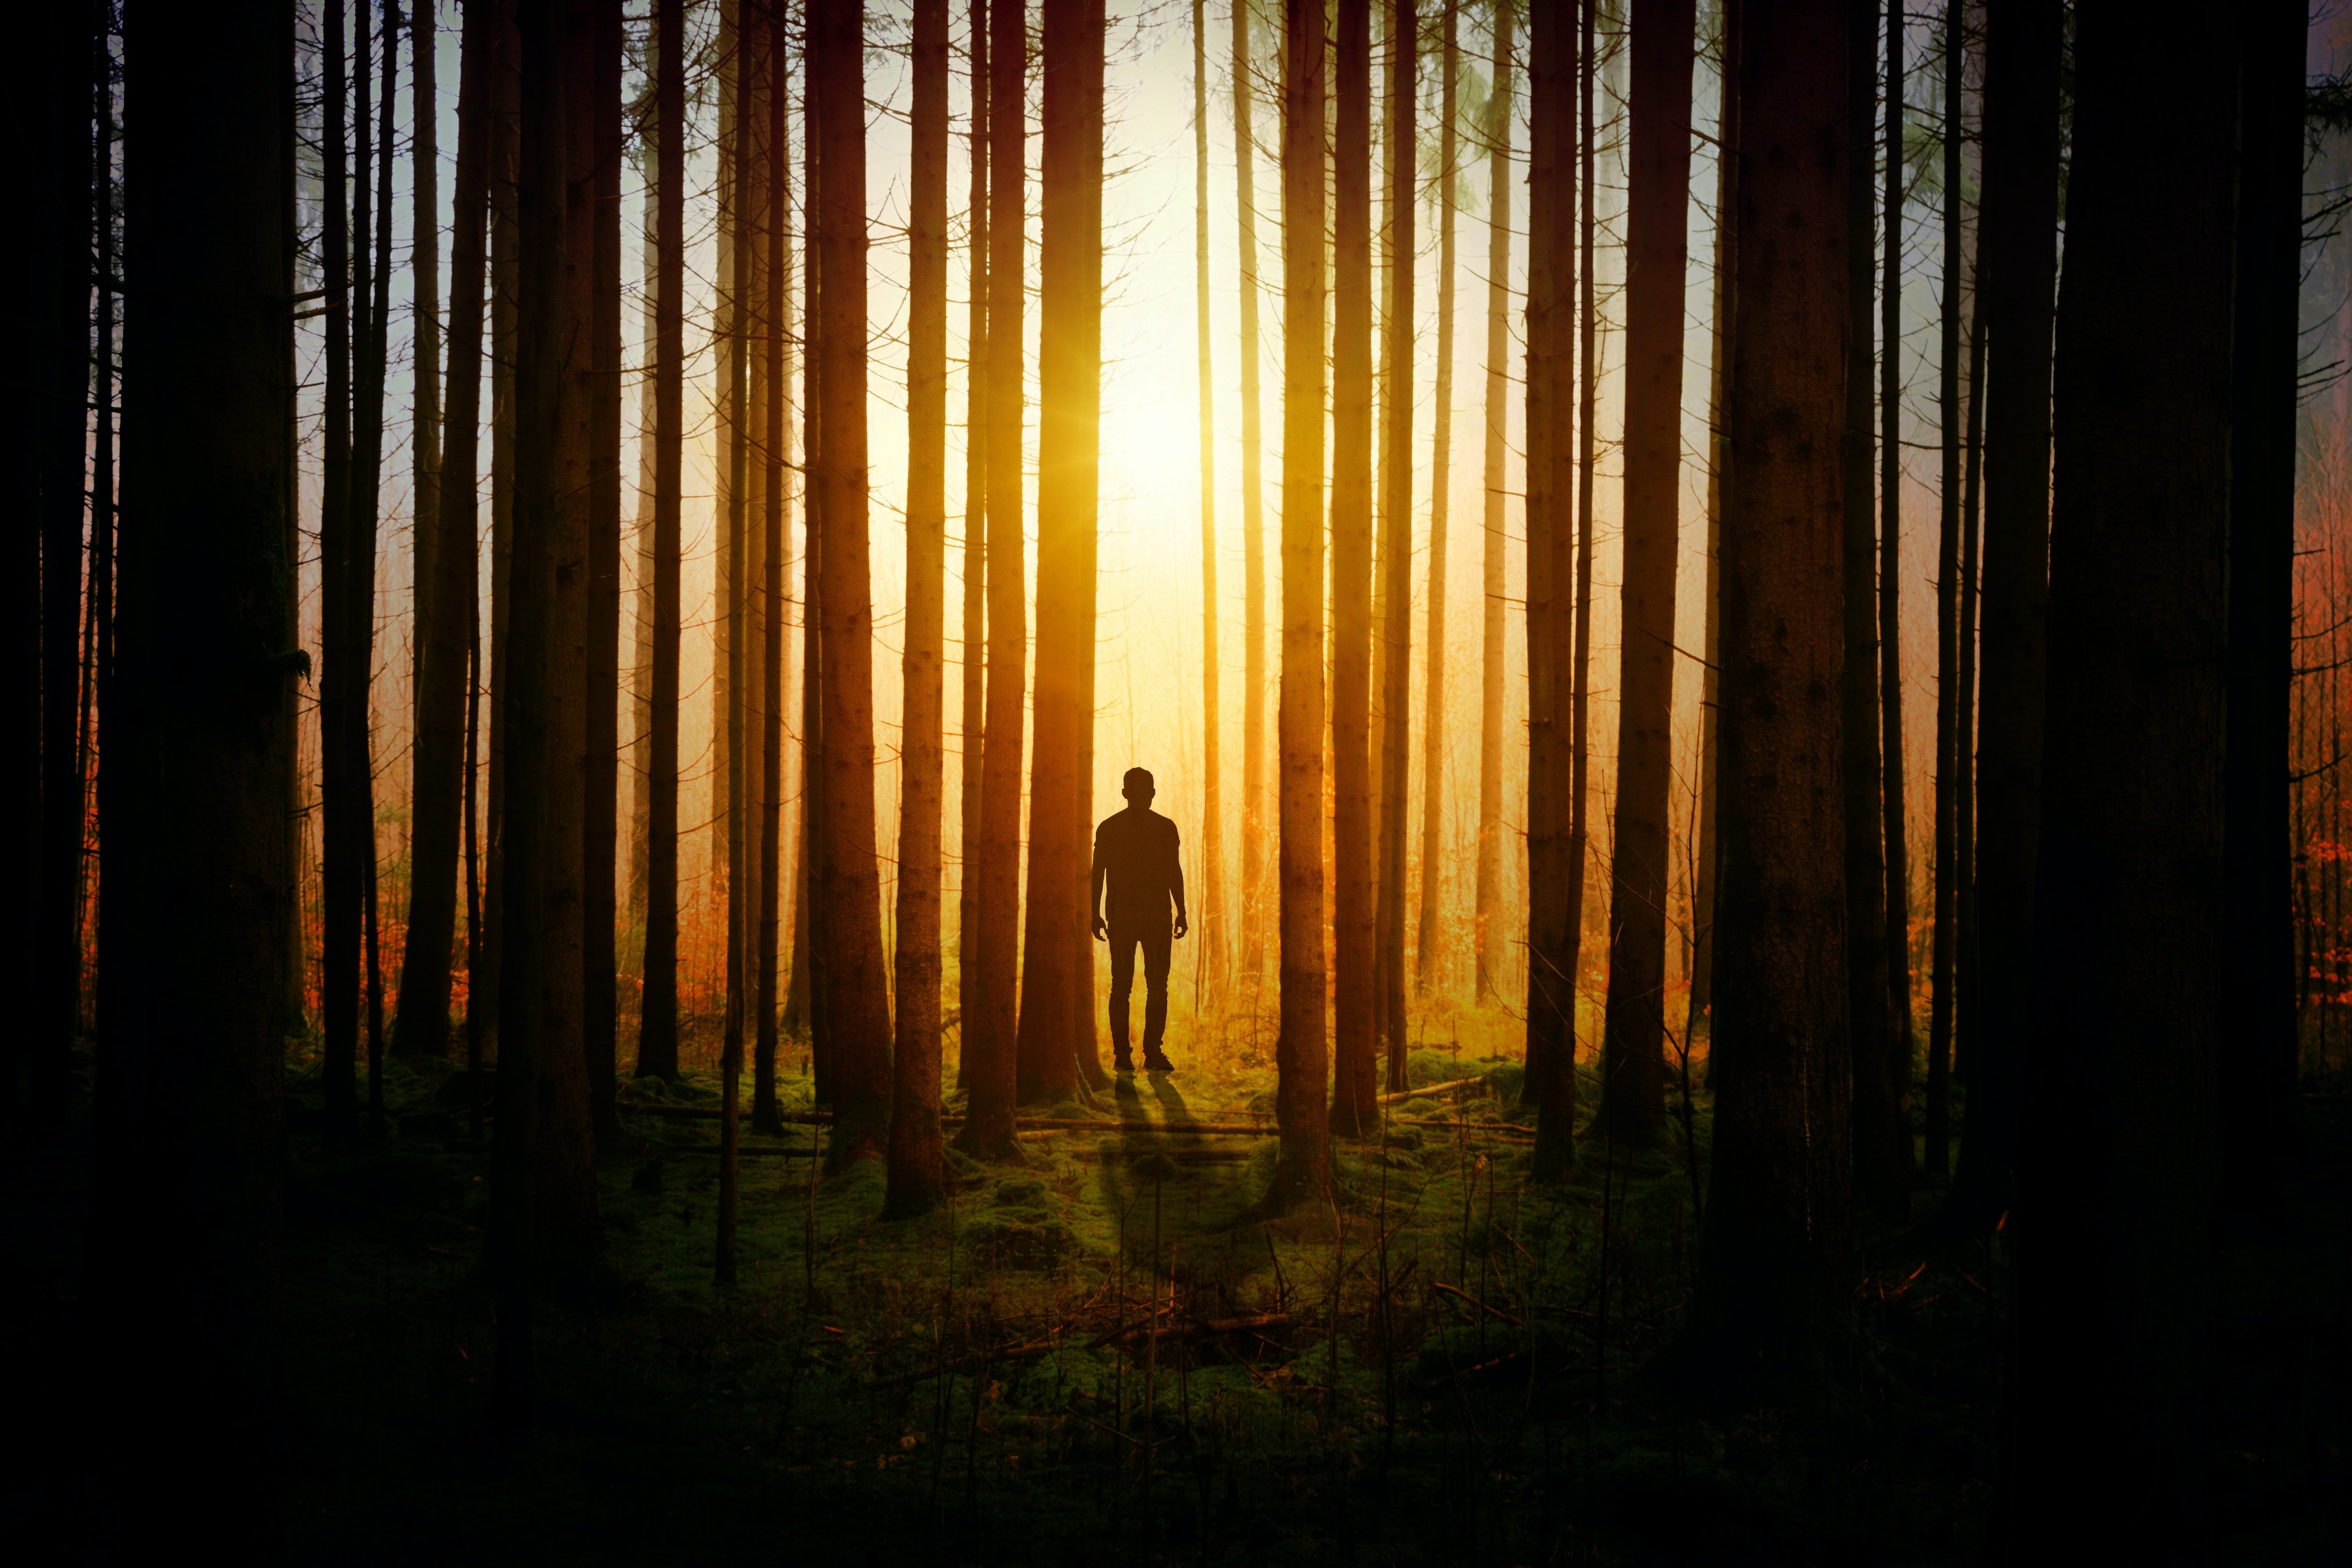 Jonas durchquerte den Wald, als ihm klar wurde, dass er sich verlaufen hatte. | Quelle: Pexels